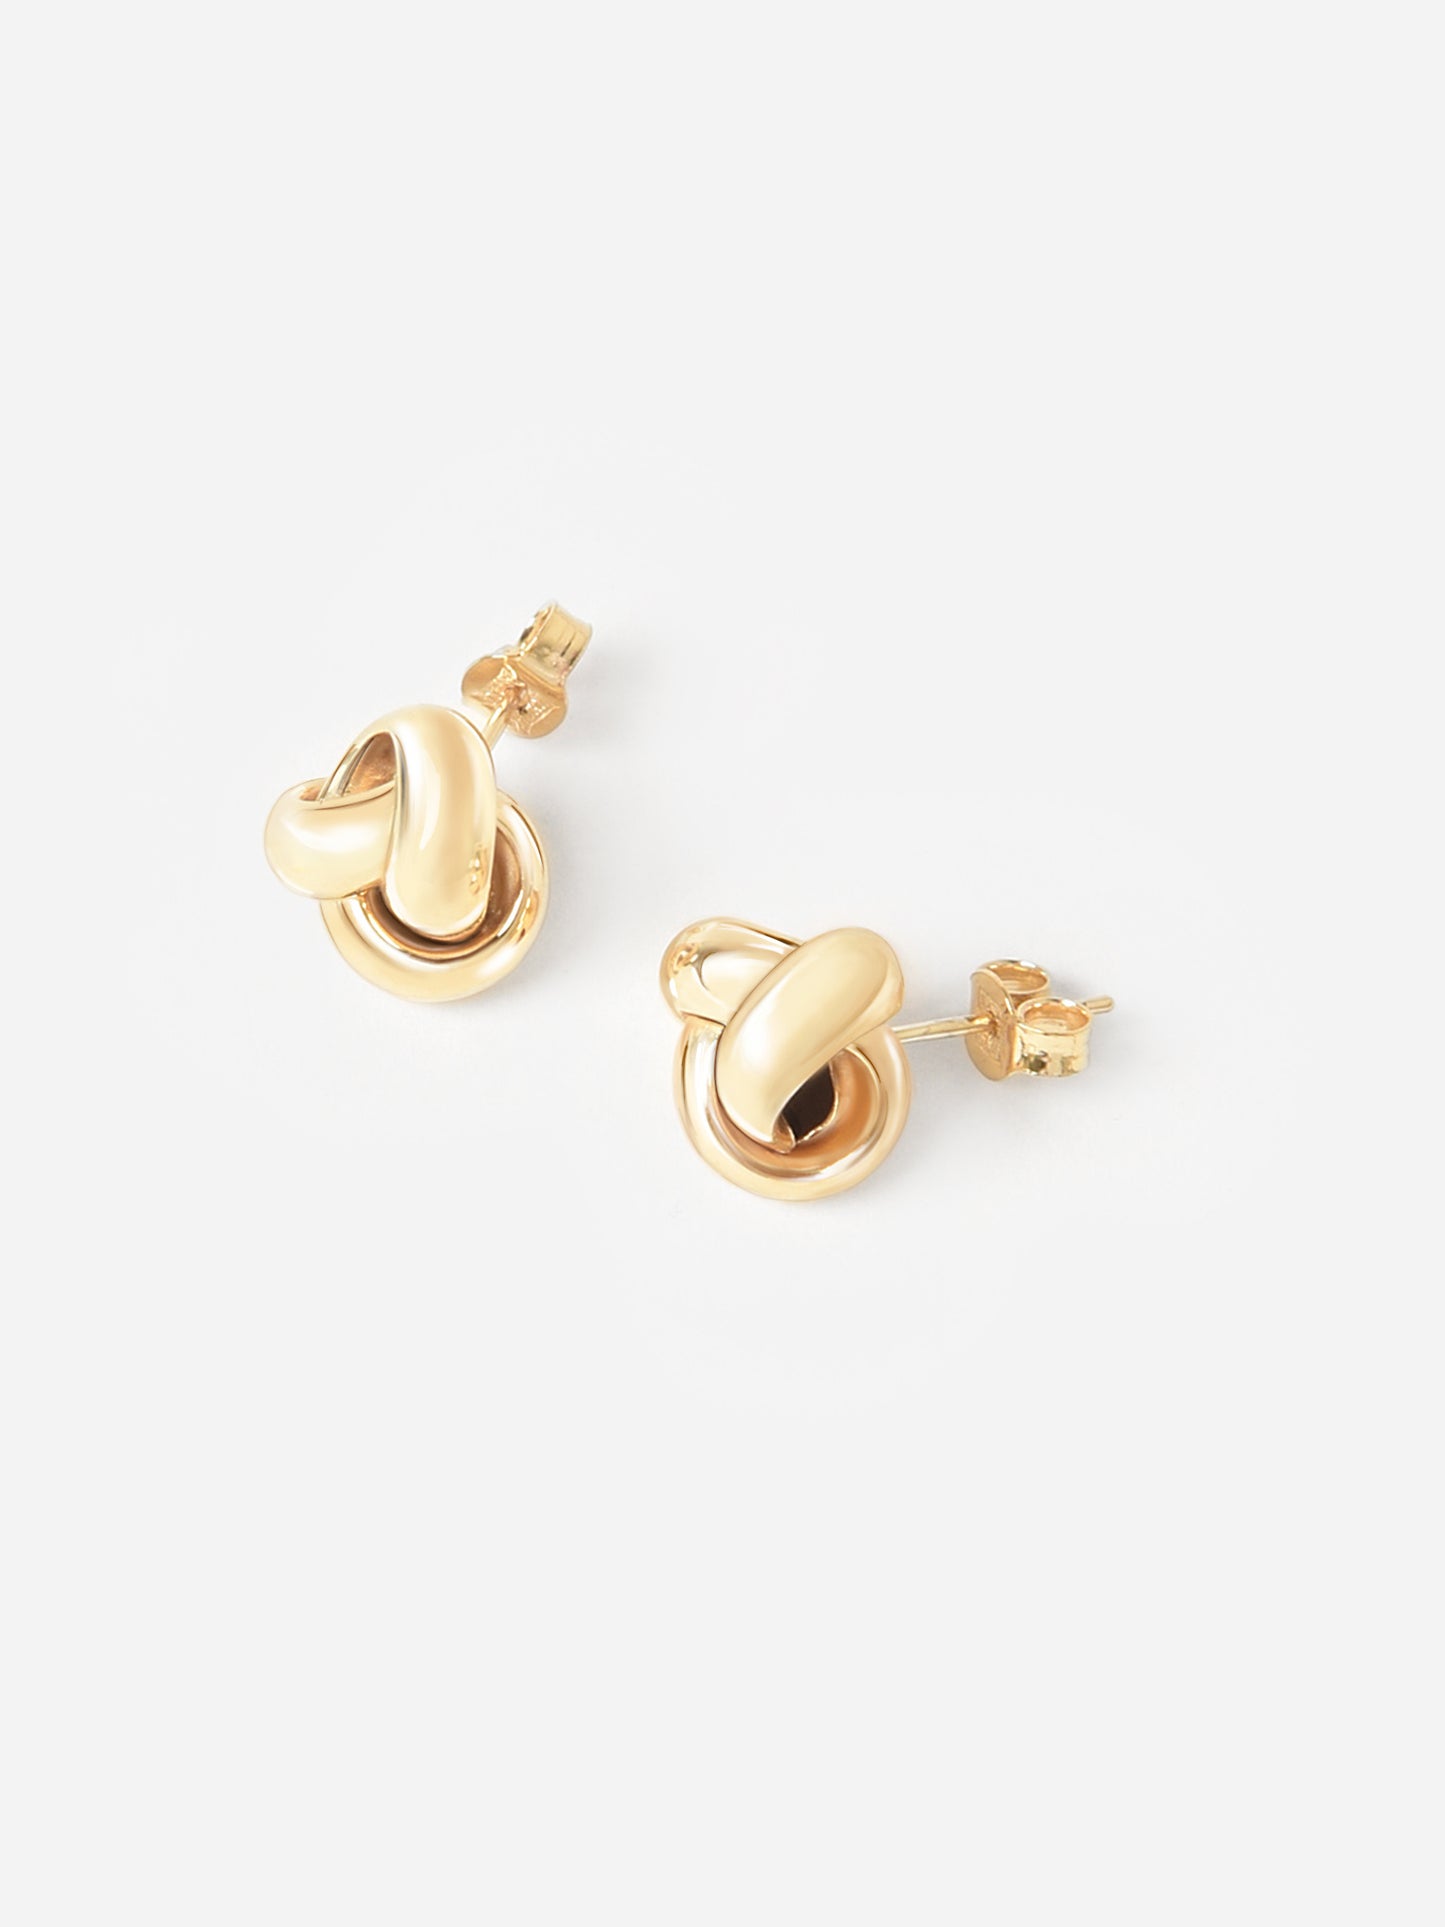 S. Bell Women's Love knot Stud Earrings